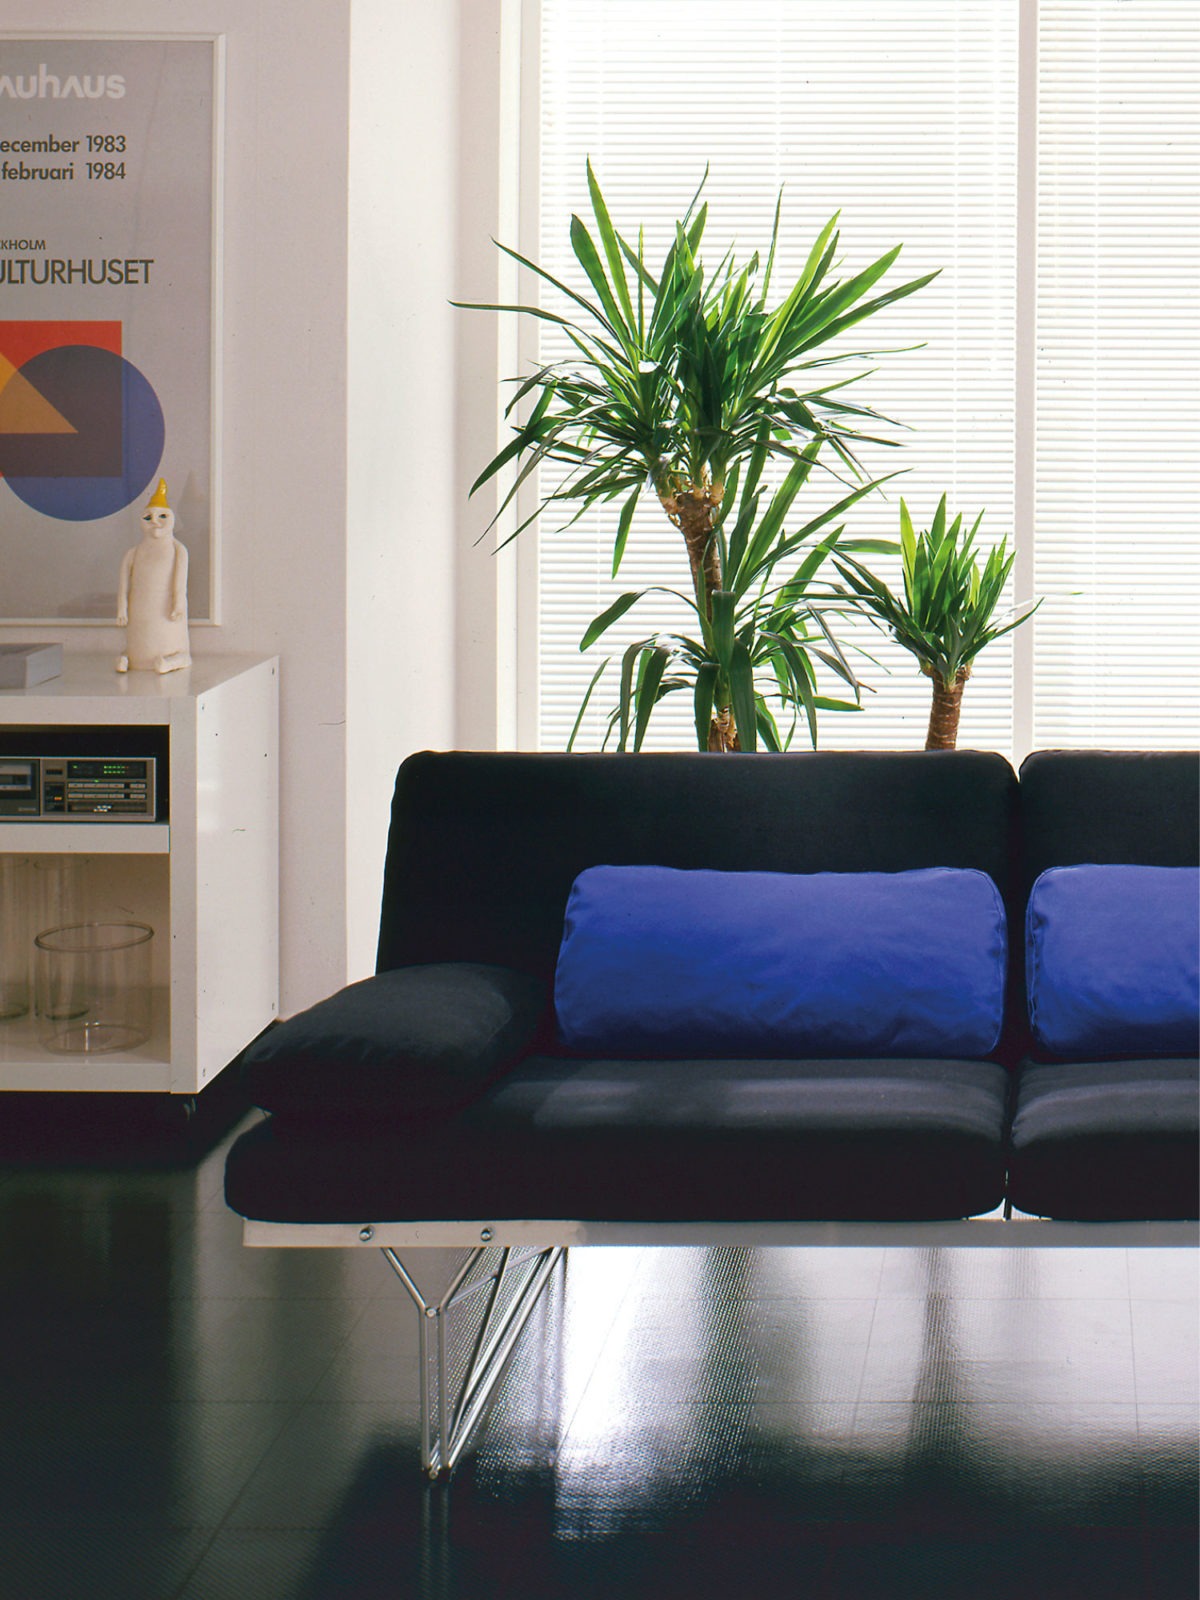 Schwarzes MOMENT Sofa und buntes MOMENT Regal mit dünnen Metallrahmen in einem Raum mit glänzendem, schwarzem Fußboden.